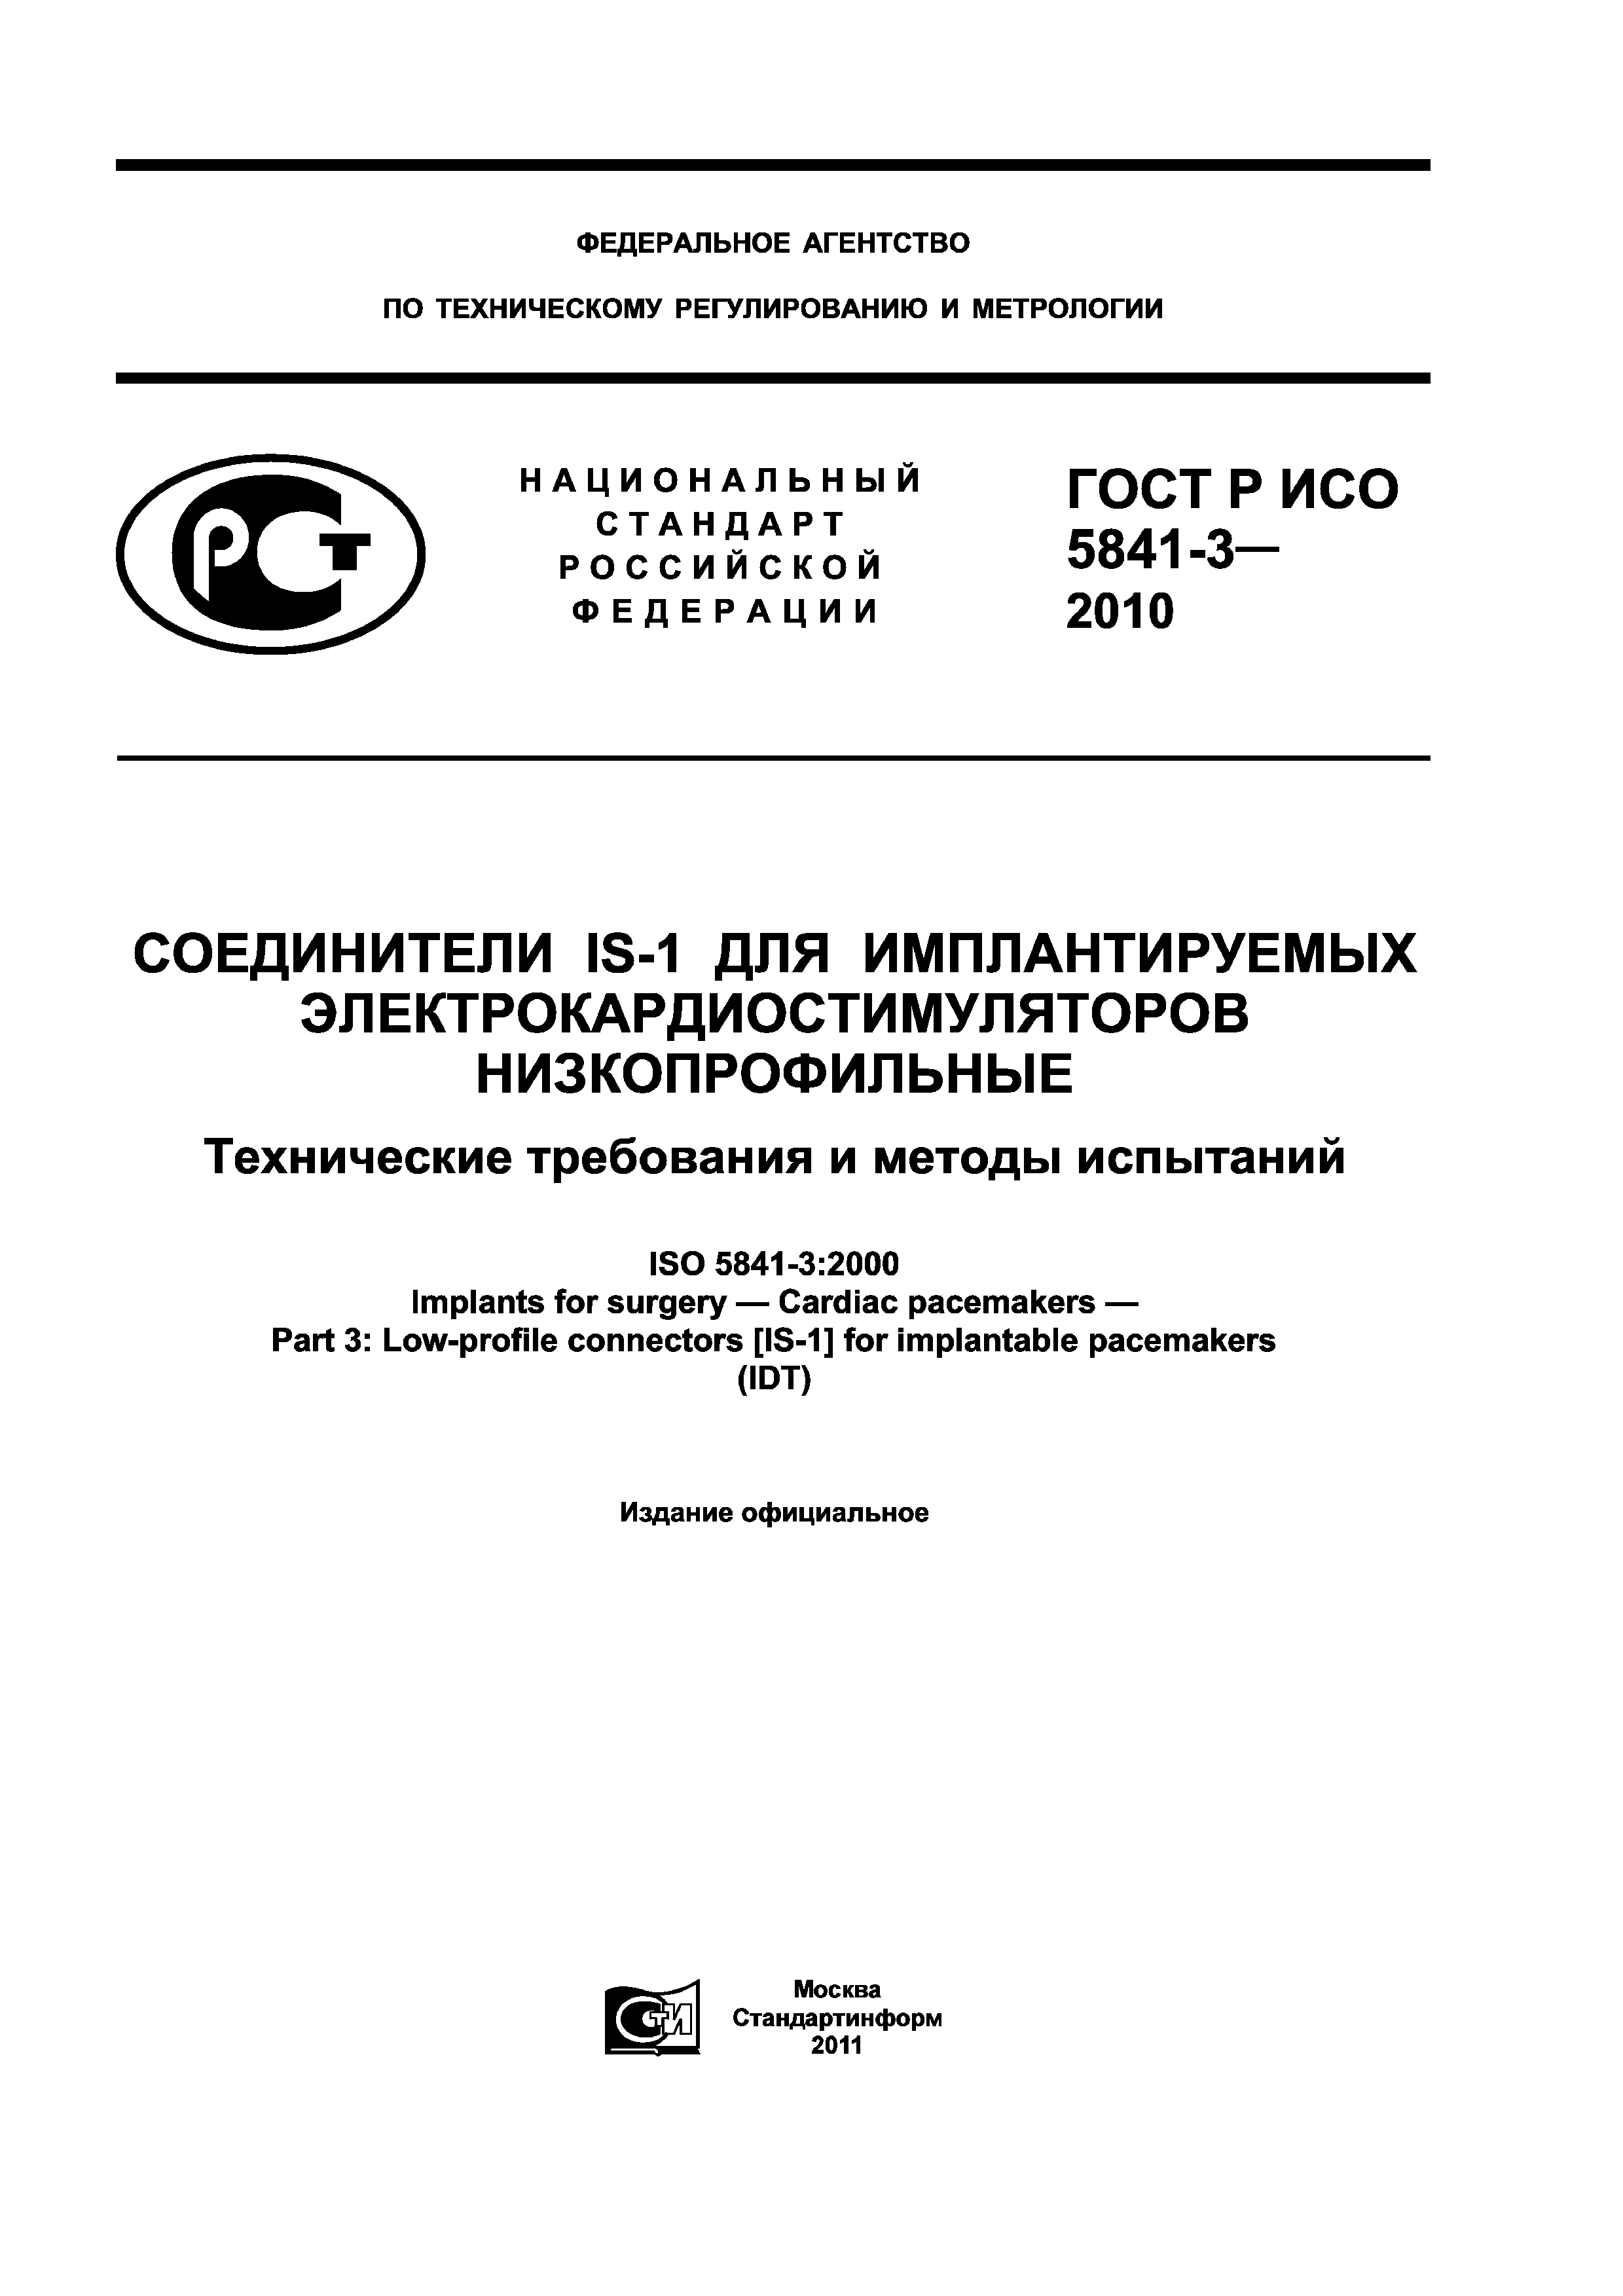 ГОСТ Р ИСО 5841-3-2010